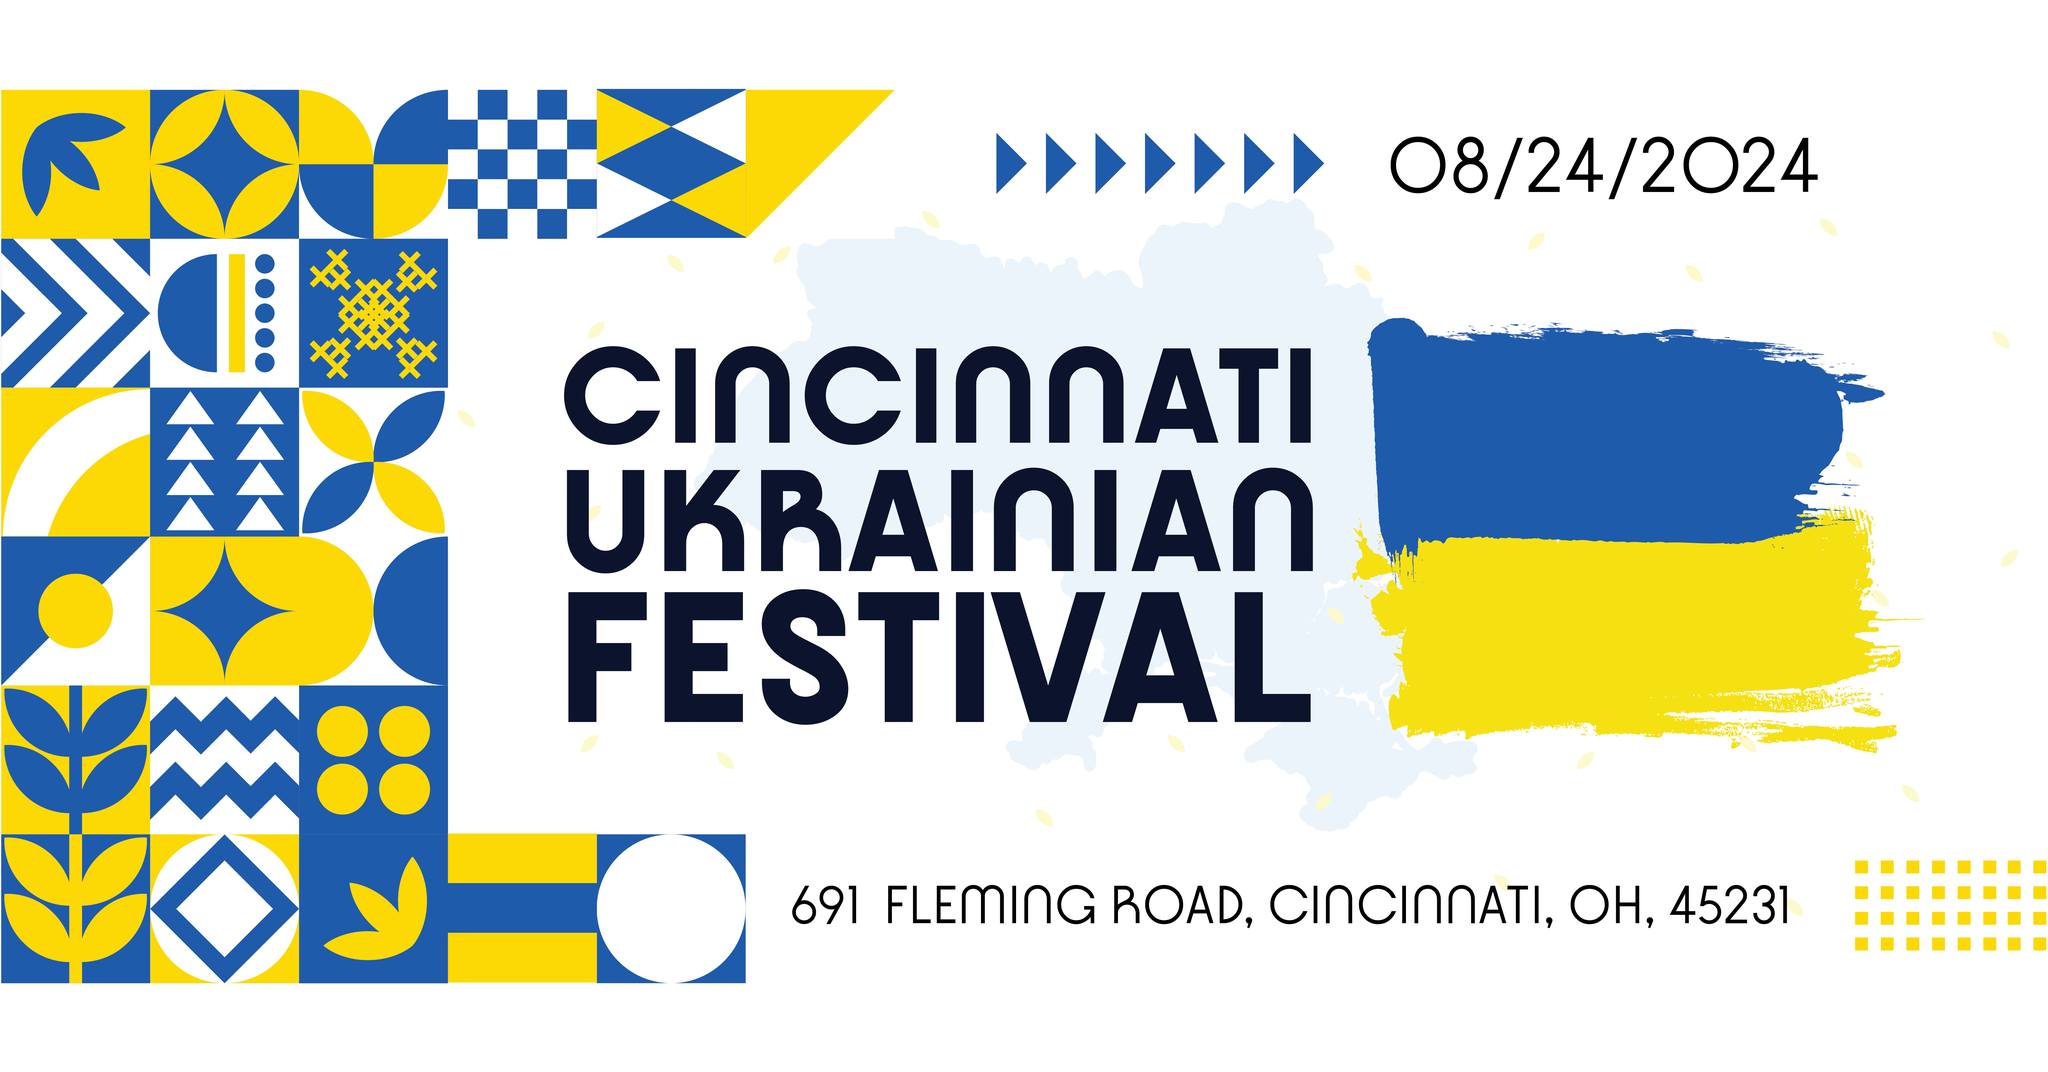 Cincinnati Ukrainian Festival - Aug 24 - OH